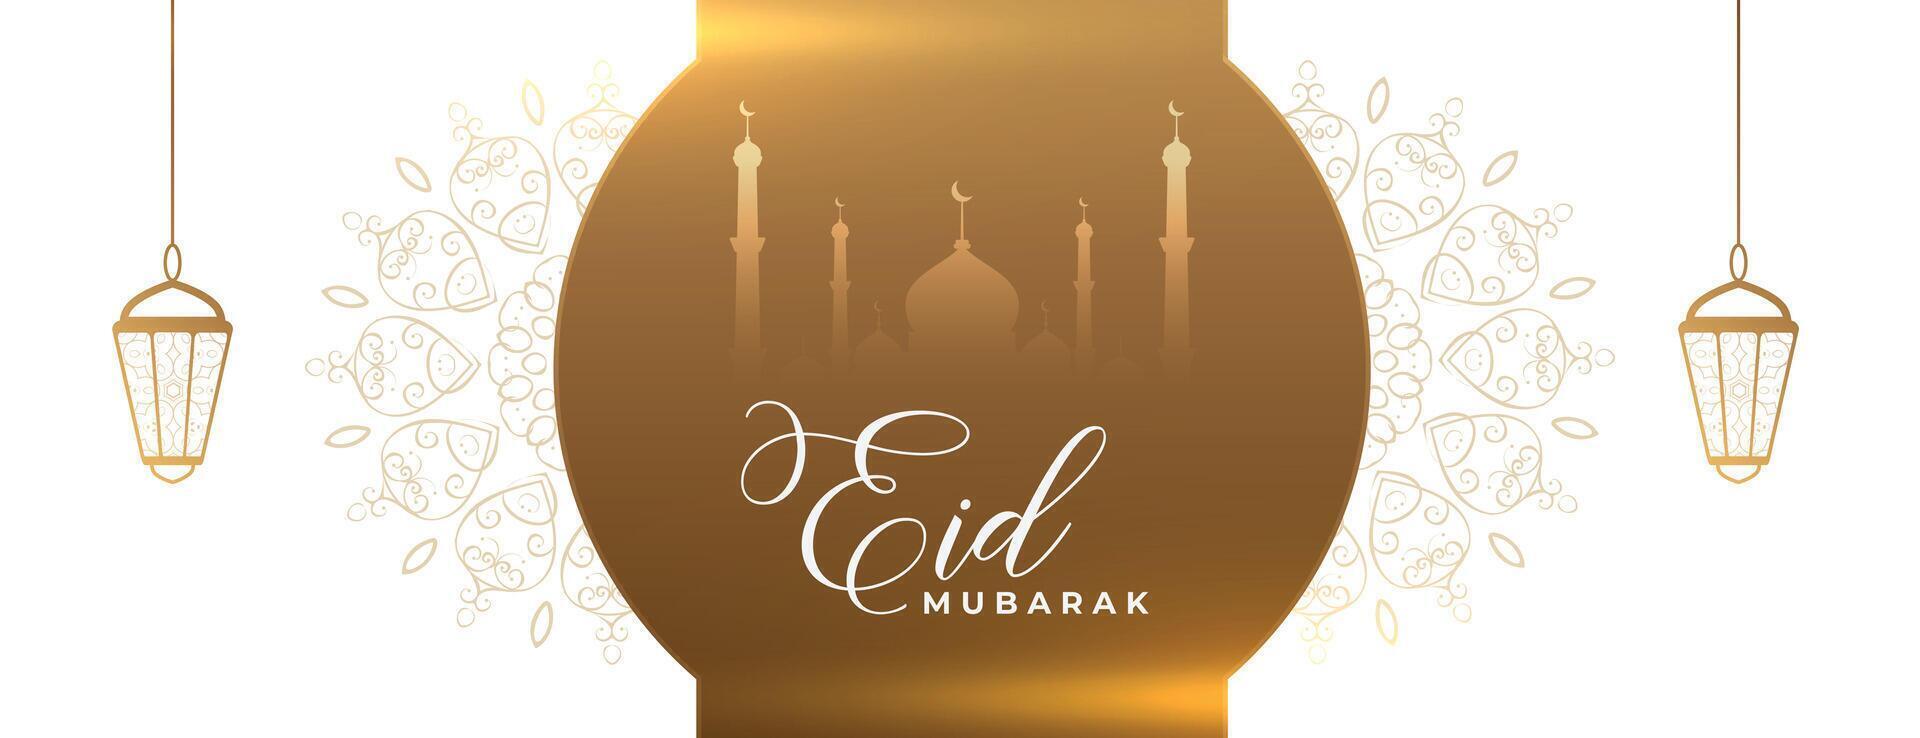 elegant golden eid mubarak festival banner design vector